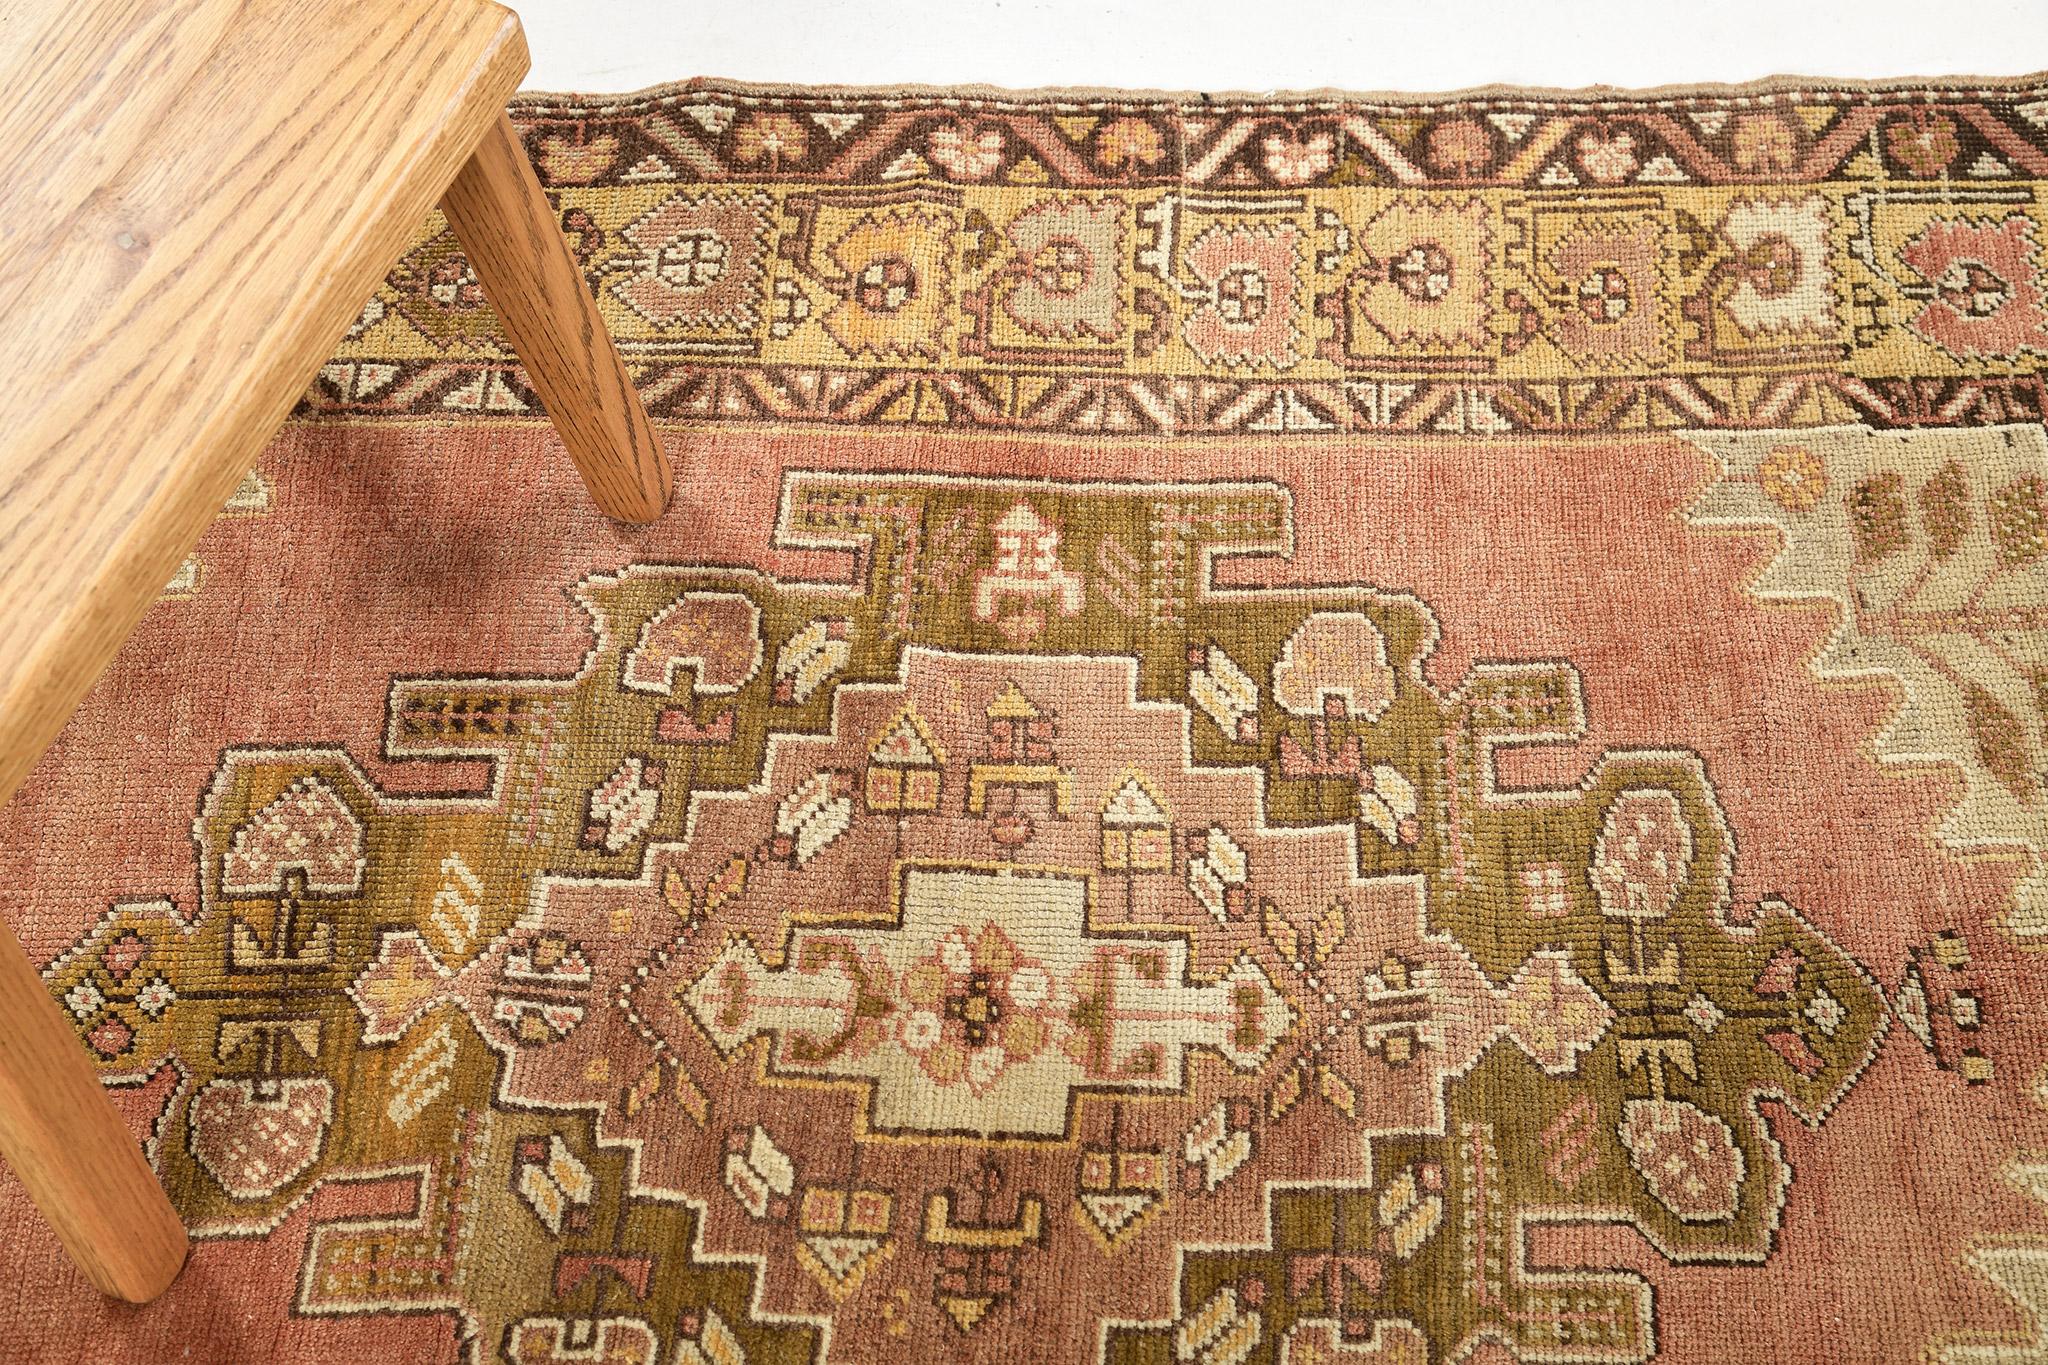 Ein türkisch-anatolischer Vintage-Teppich, der zu beeindrucken vermag. Geprägt von überwiegend geometrischen Motiven, verschnörkelten botanischen Details und einer warmen Farbgebung, erzeugt dieses aufwendige Design ein faszinierendes Gefühl von